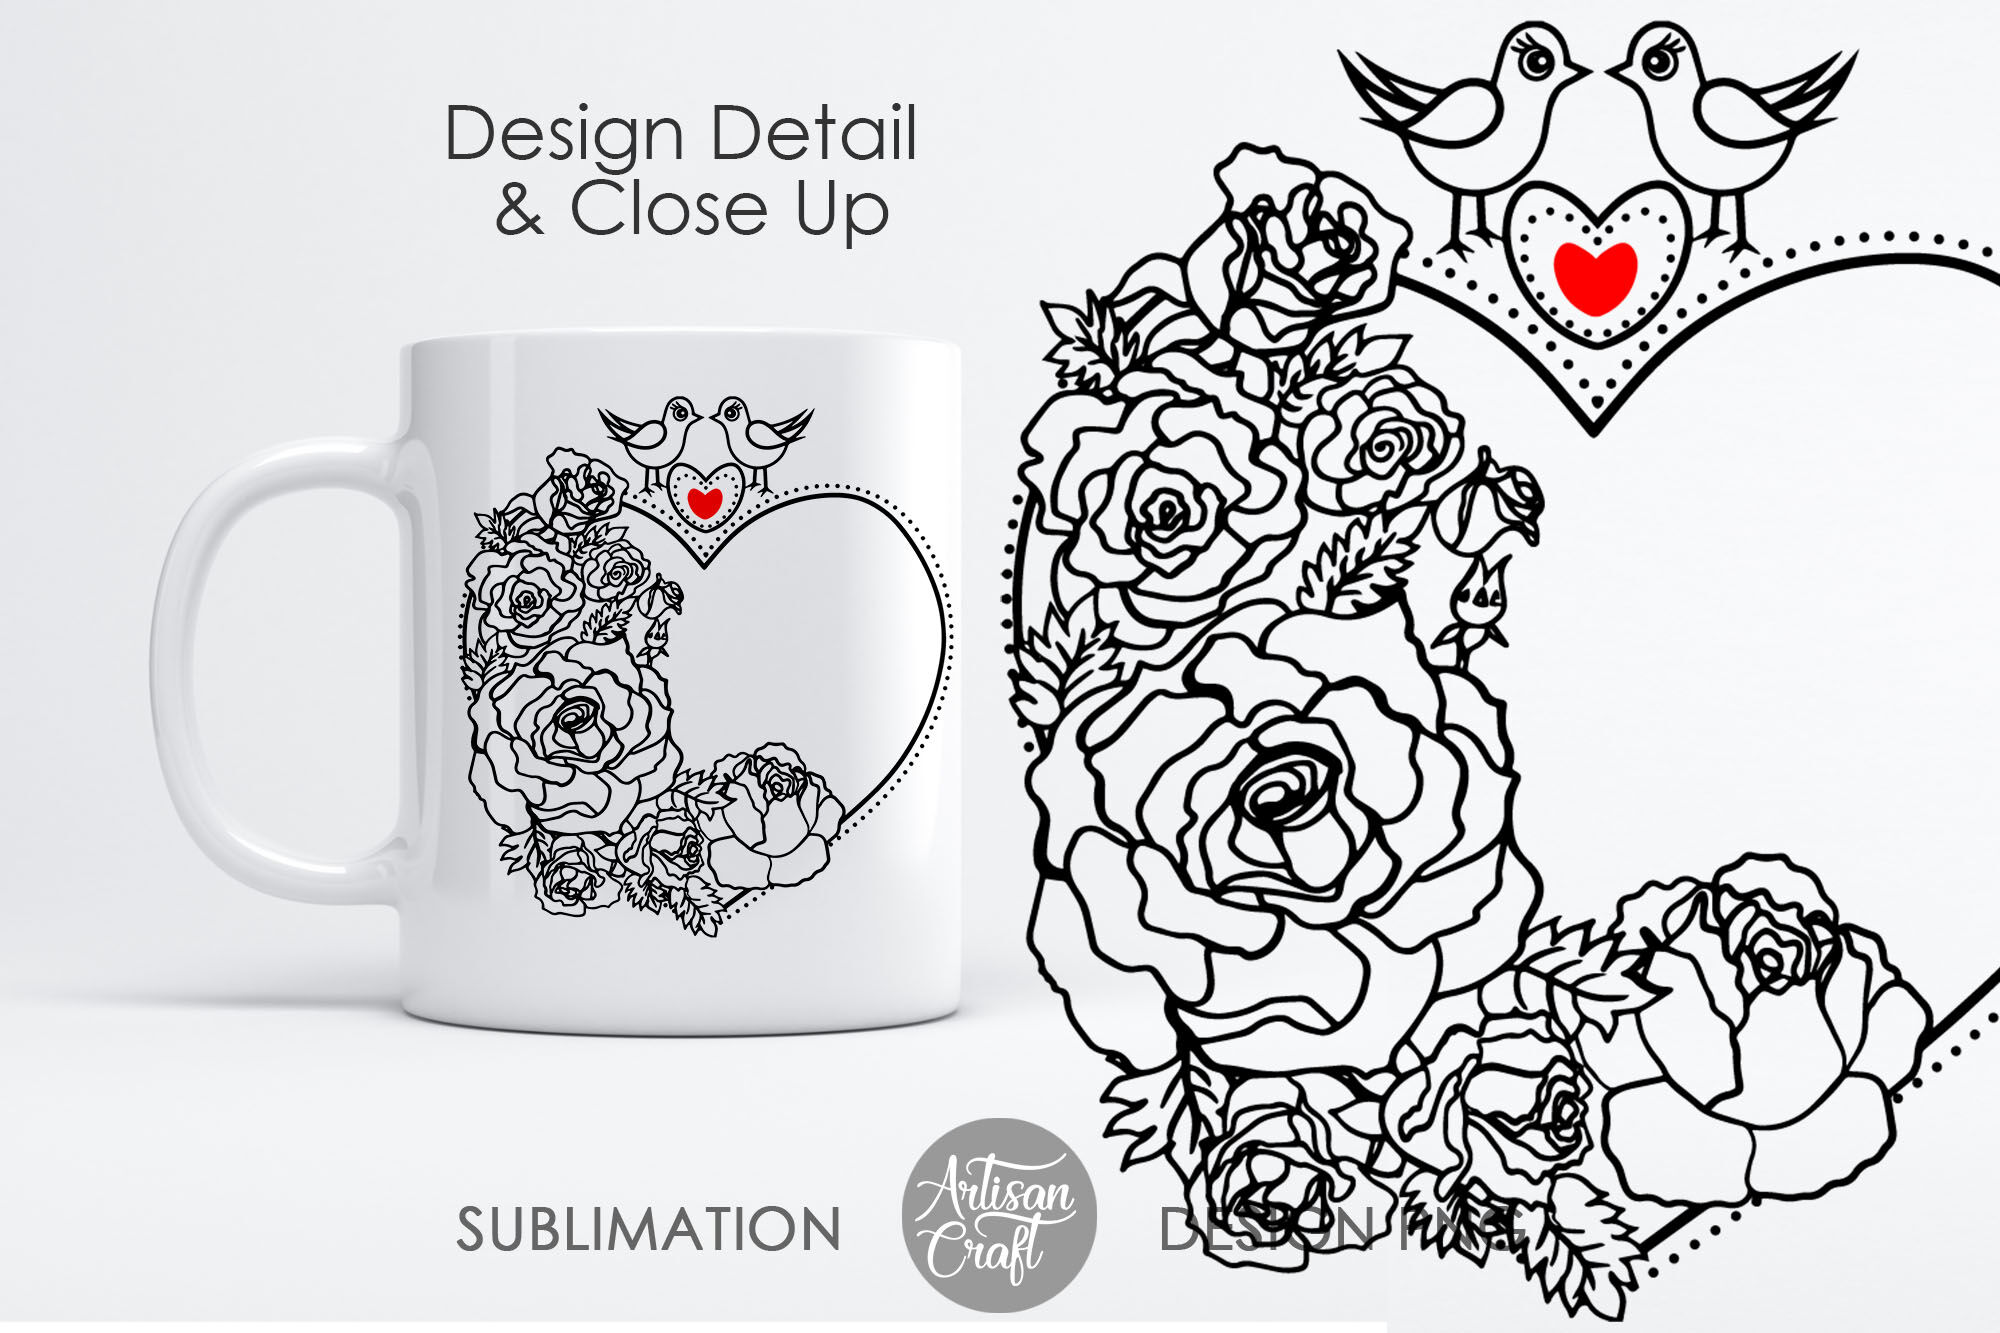 3D Roses 11oz mug sublimation designs, 3d mug design, 3d flower PNG By  Artisan Craft SVG